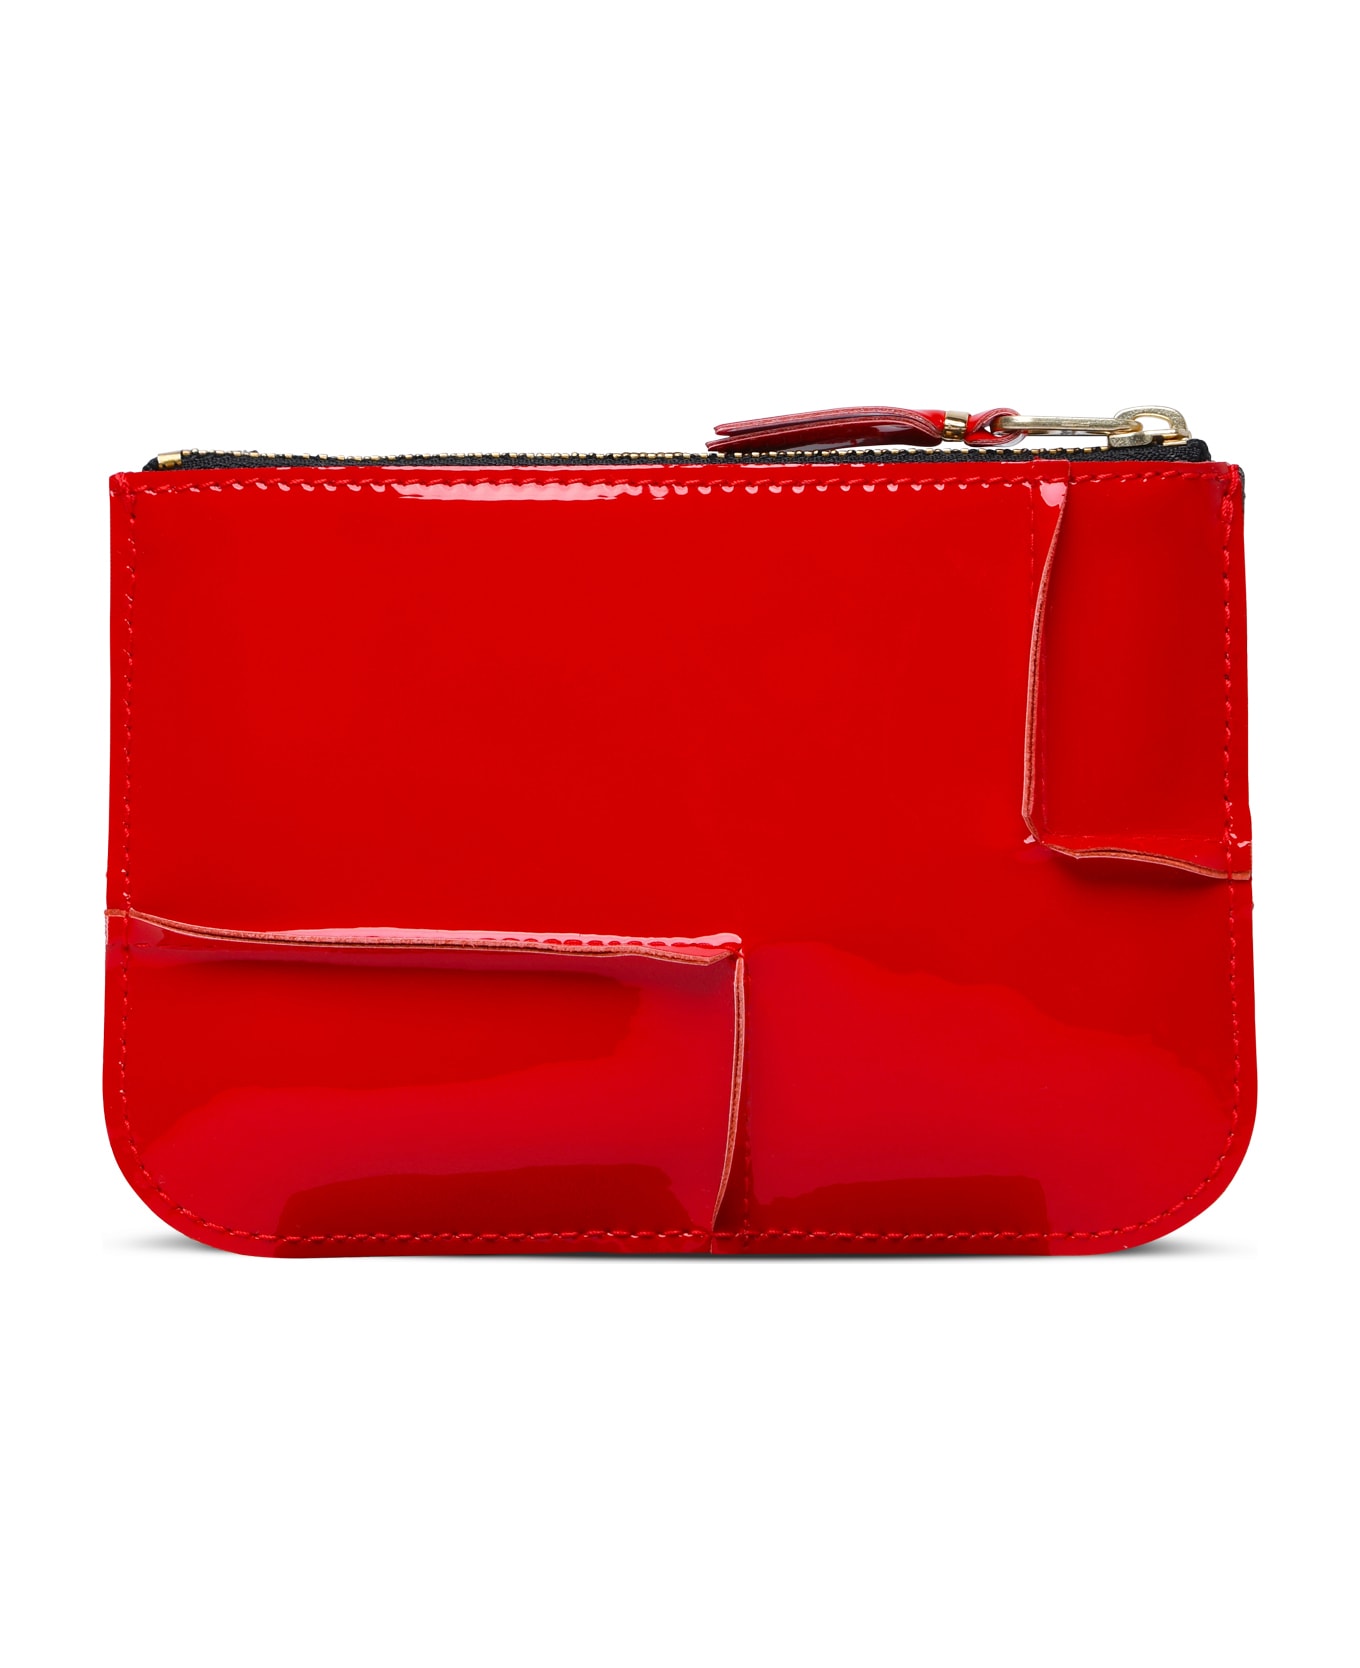 Comme des Garçons Wallet 'medley' Red Leather Card Holder - Red 財布